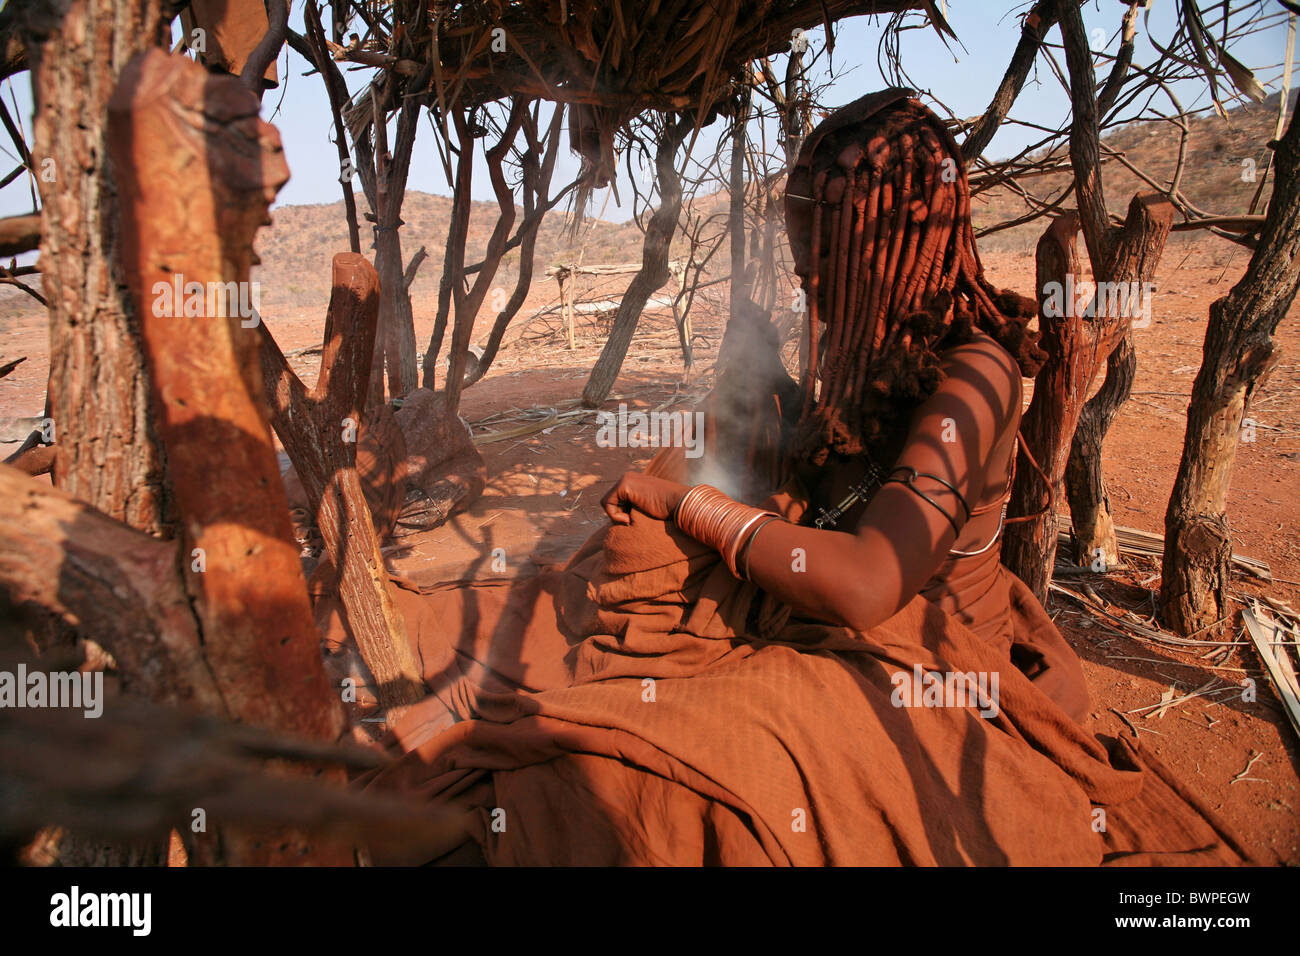 Namibia Afrika Himba Stamm Sommer 2007 Afrika einheimischen traditionellen Schmuck Schmuck native Eingeborenen wom Stockfoto